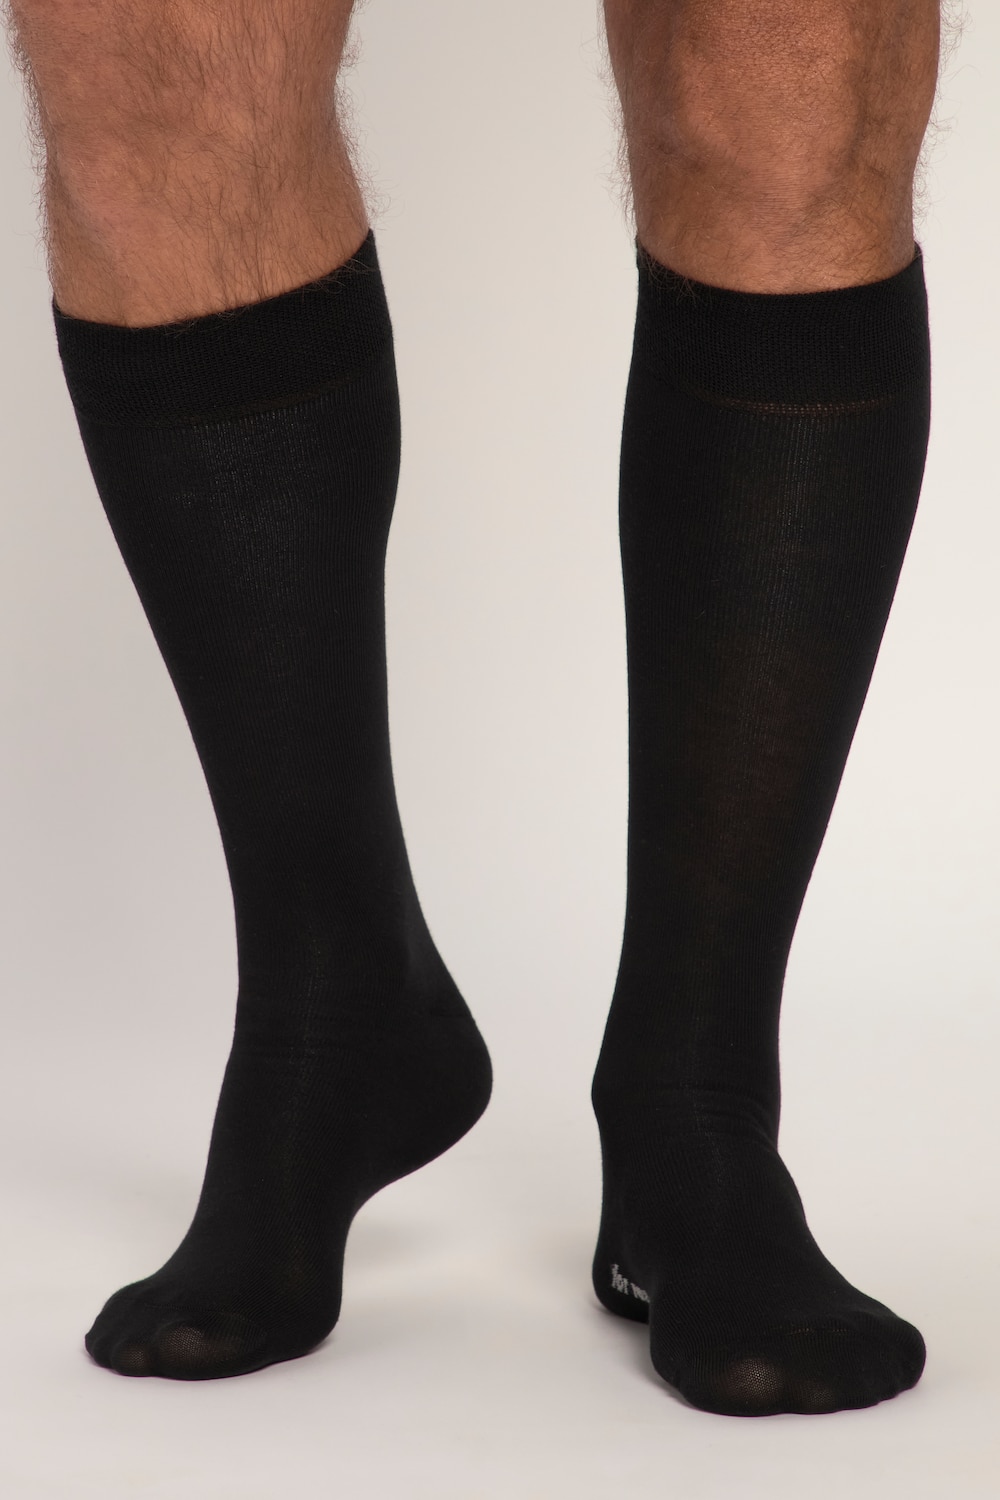 grandes tailles chaussettes hautes à bords-côtes confort, hommes, noir, taille: 47-50, coton/fibres synthétiques, jp1880